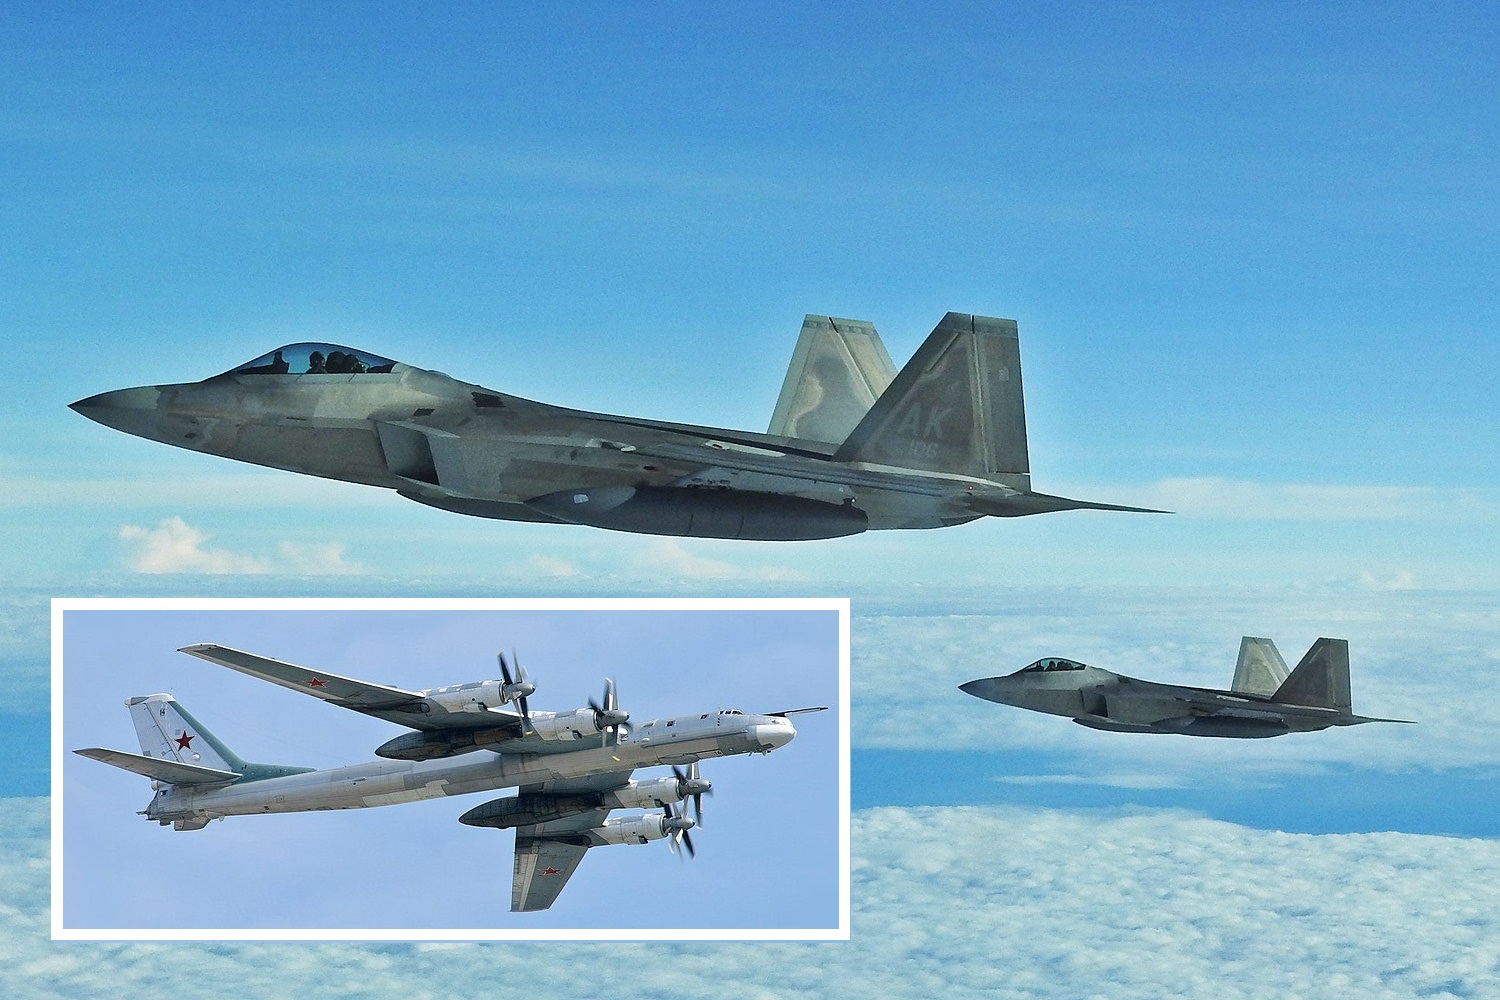 Vijfde generatie F-22 gevechtsvliegtuigen onderscheppen twee Russische Tu-95 nucleaire bommenwerpers nabij Alaska